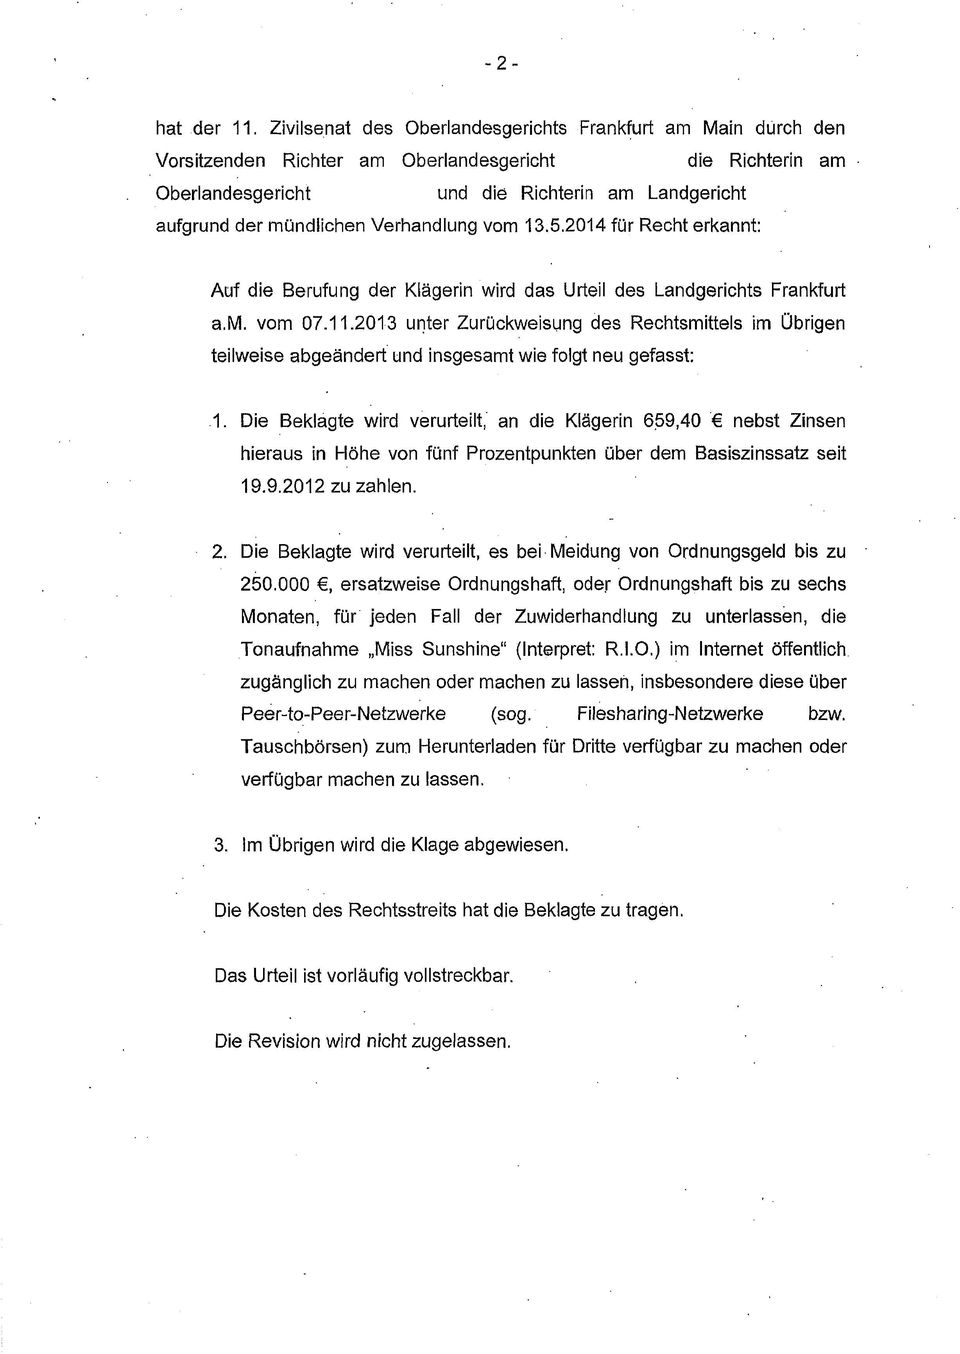 Verhandlung vom 13.5.2014 für Recht erkannt: Auf die Berufung der Klägerin wird das Urteil des Landgerichts Frankfurt a.m. vom 07.11.